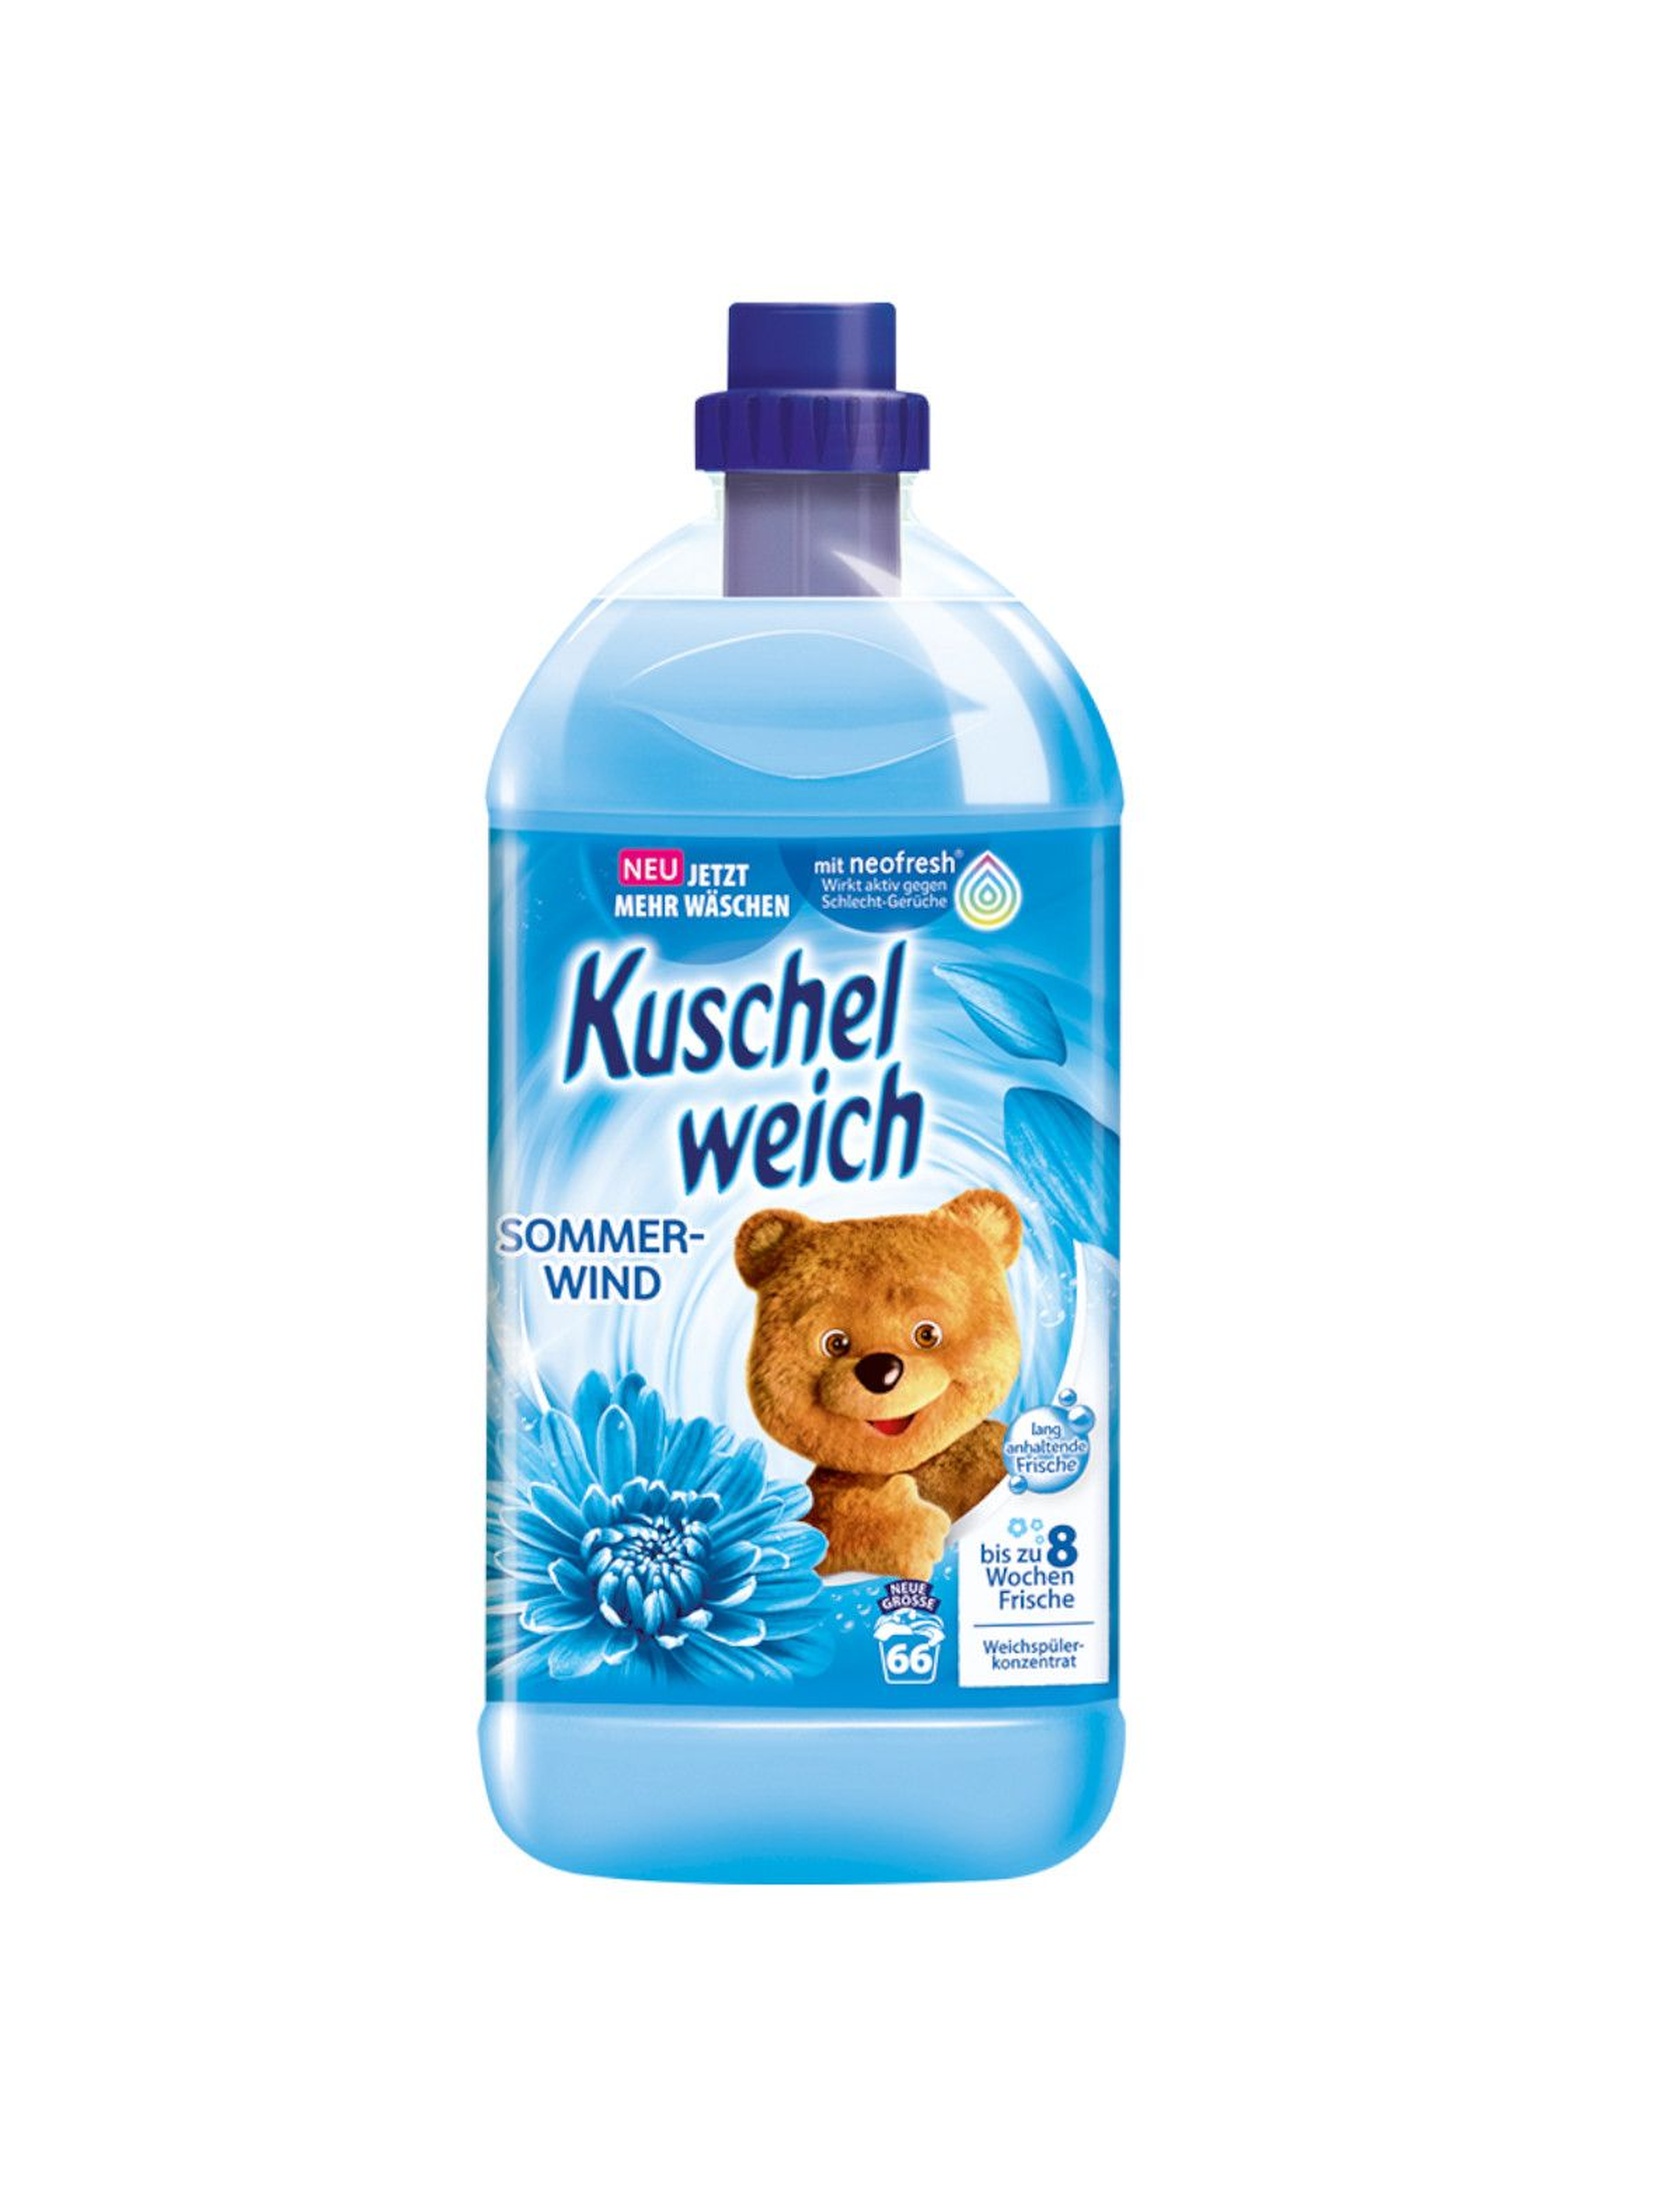 Kuschelweich płyn do płukania Sommerwind niebieski - 2l